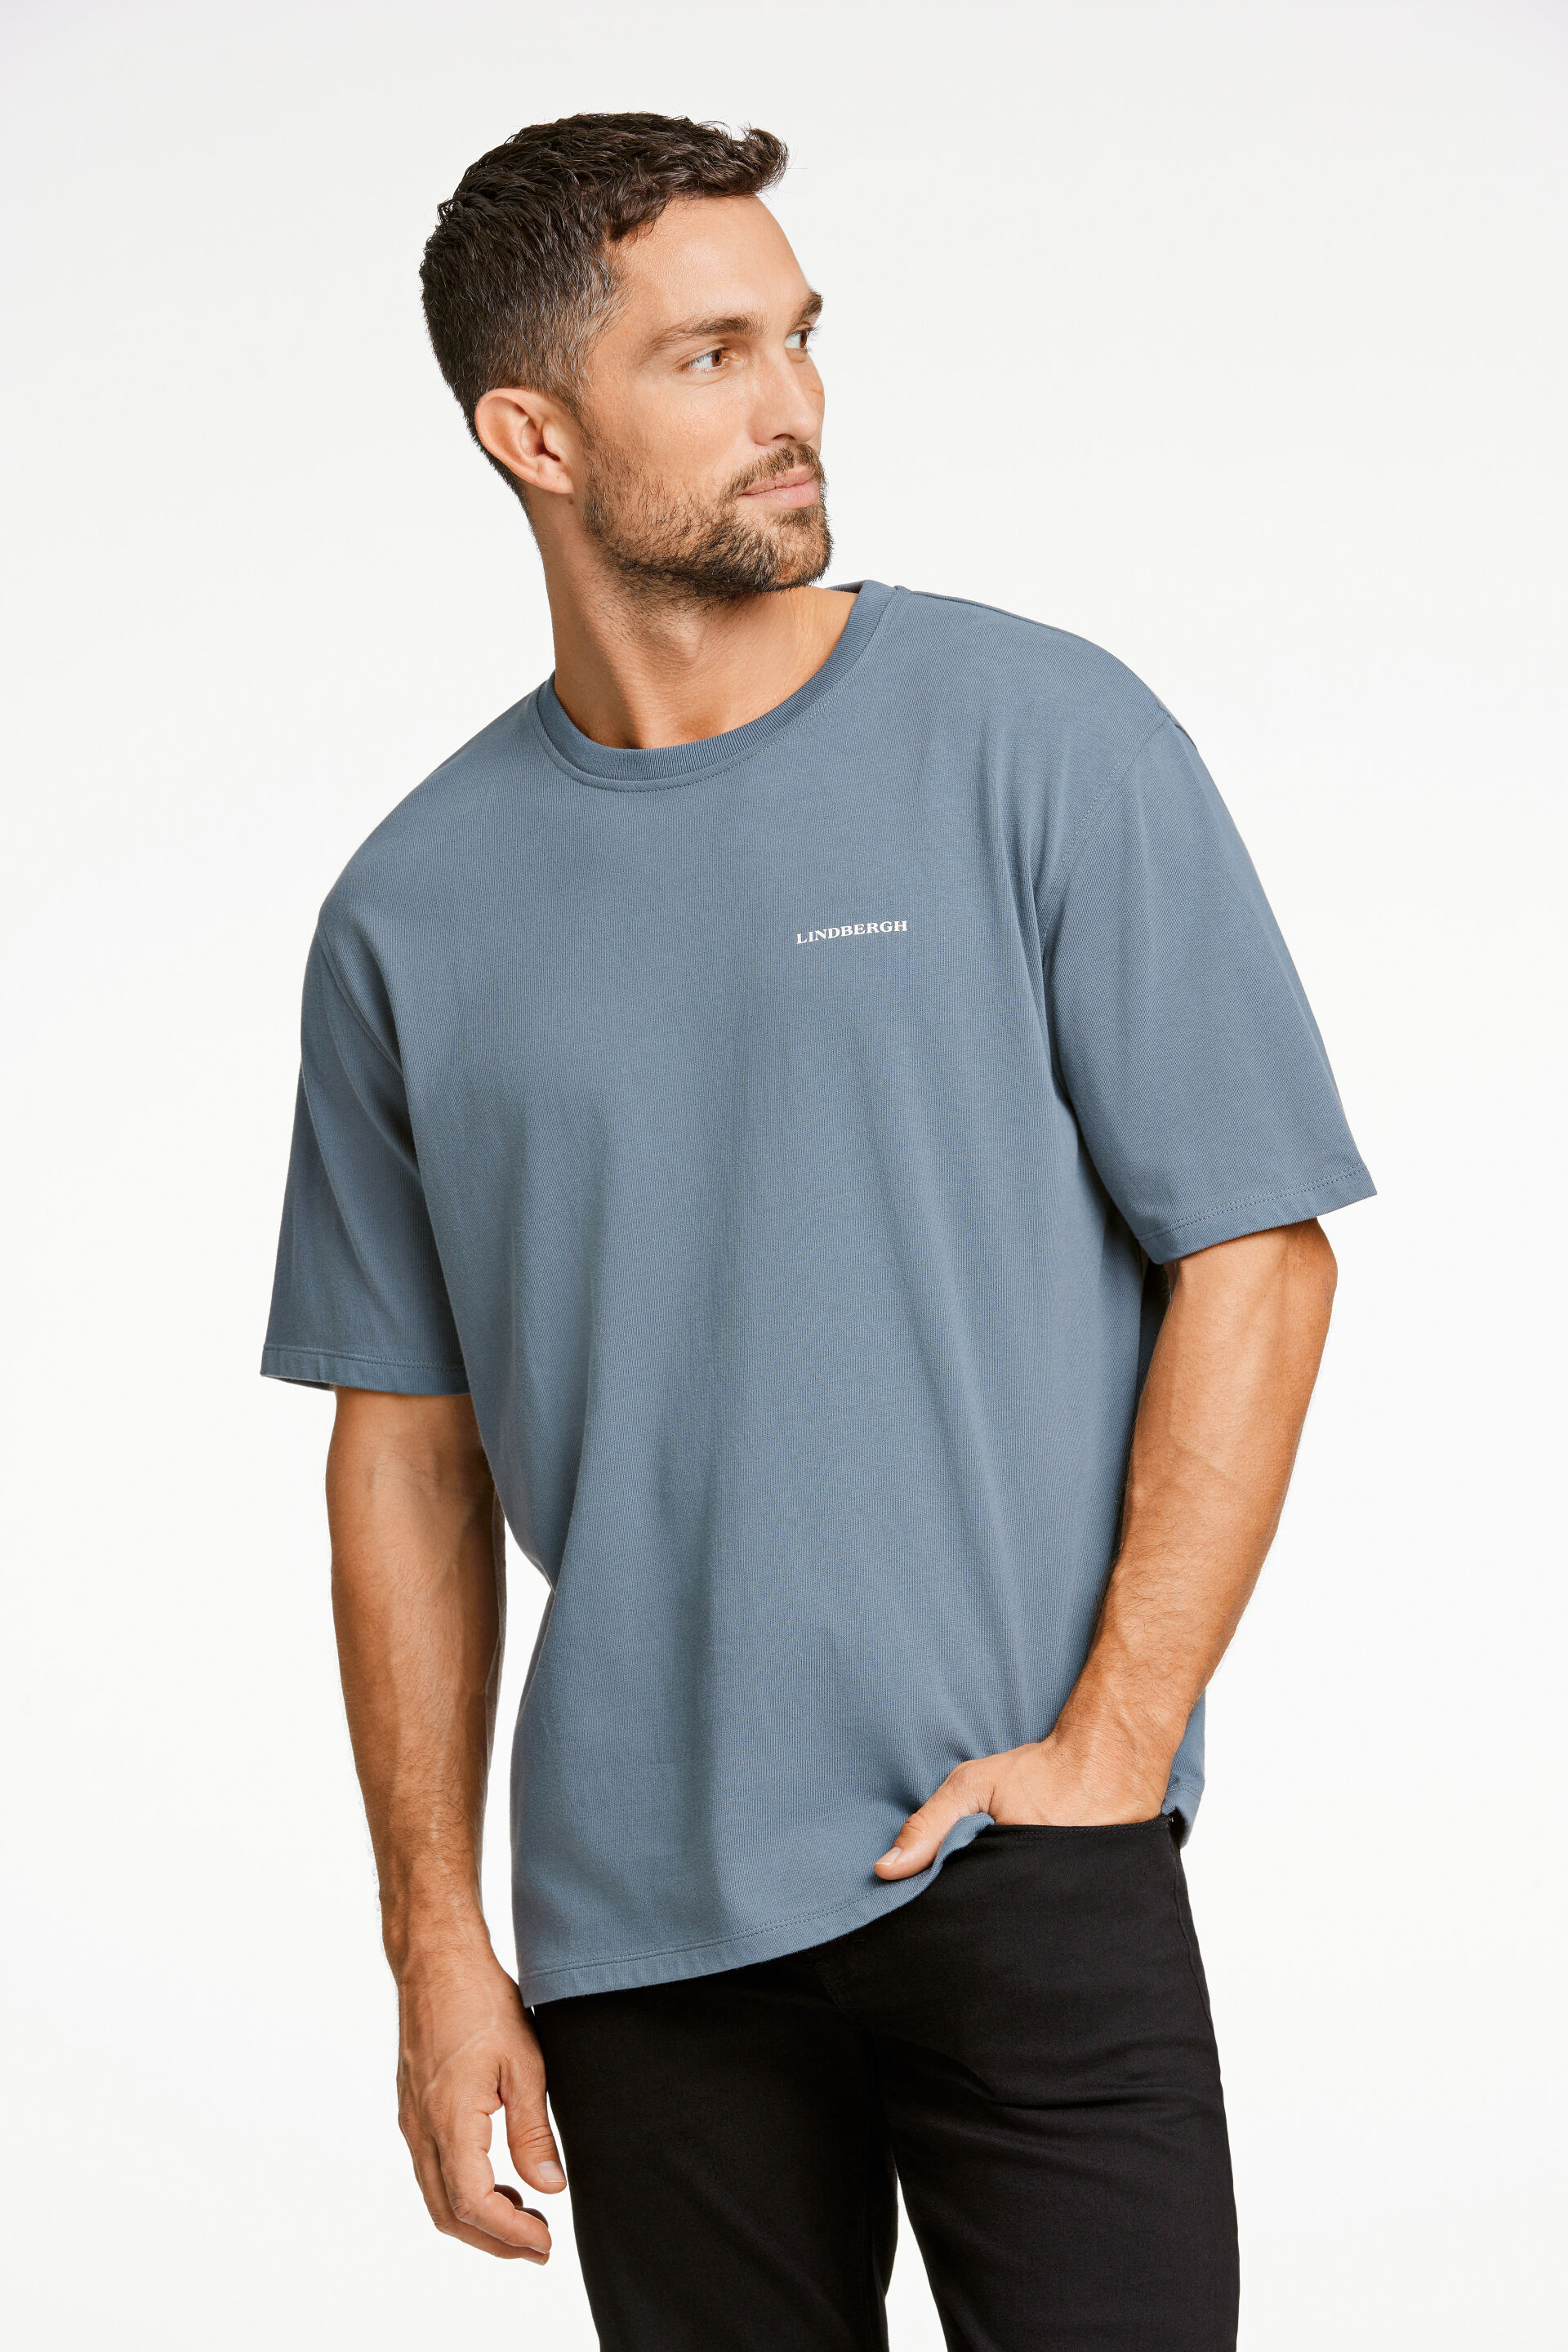 T-shirt T-shirt Blau 30-425019